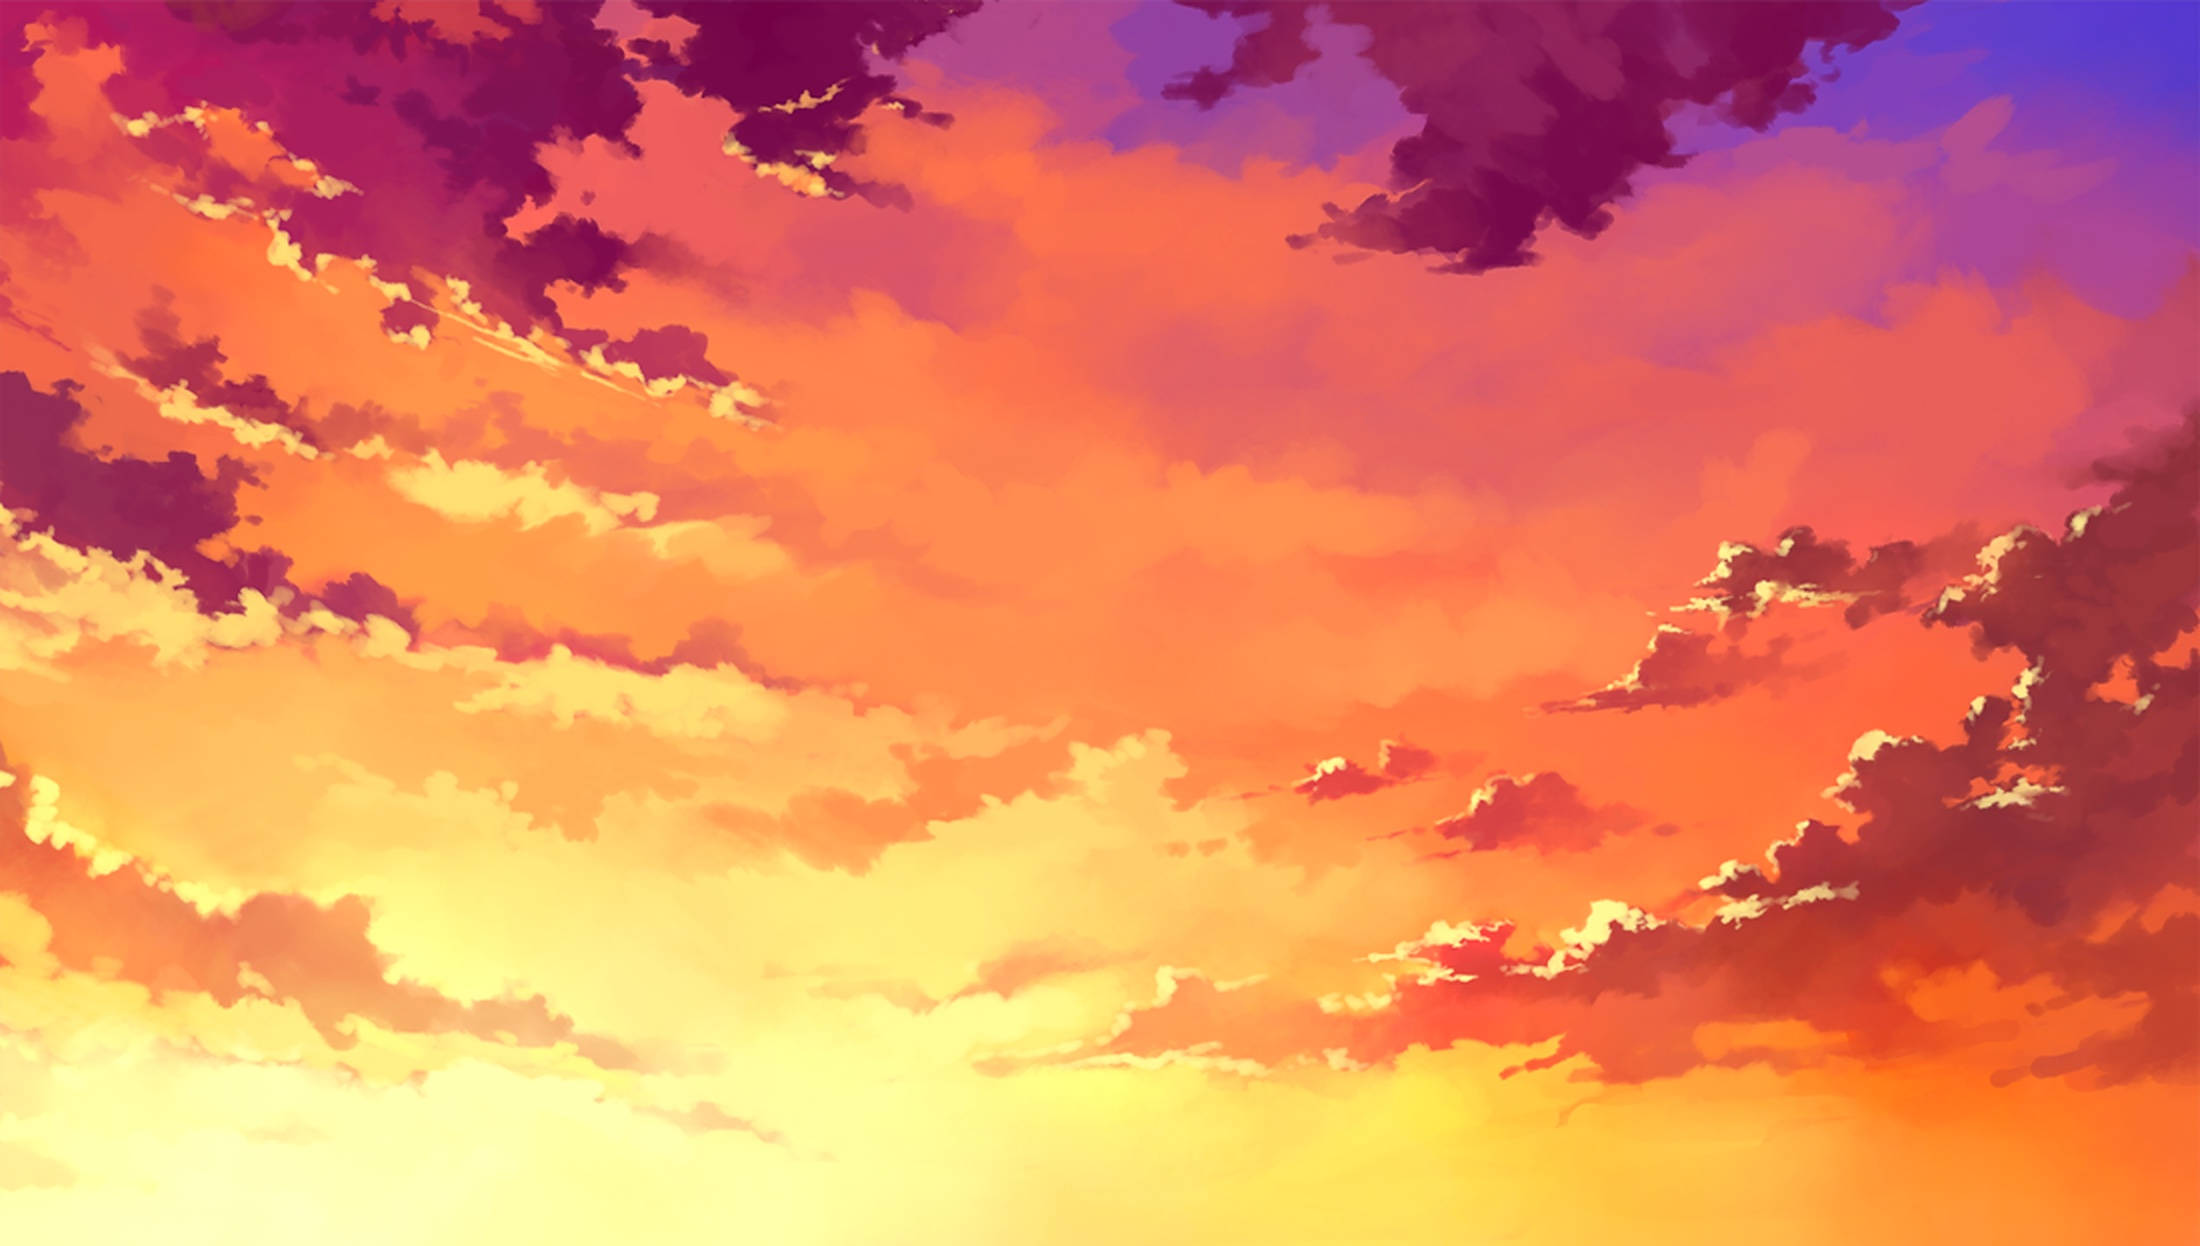 Sunset sky: Màu sắc lung linh, tầm nhìn rộng mở, và bầu trời đầy lãng mạn chính là những gì bạn sẽ tìm thấy khi xem bức ảnh về bầu trời hoàng hôn này. Đón xem những tia nắng cuối cùng của ngày tàn, và hơi thở của gió đưa bạn đến một thế giới đẹp tuyệt vời.